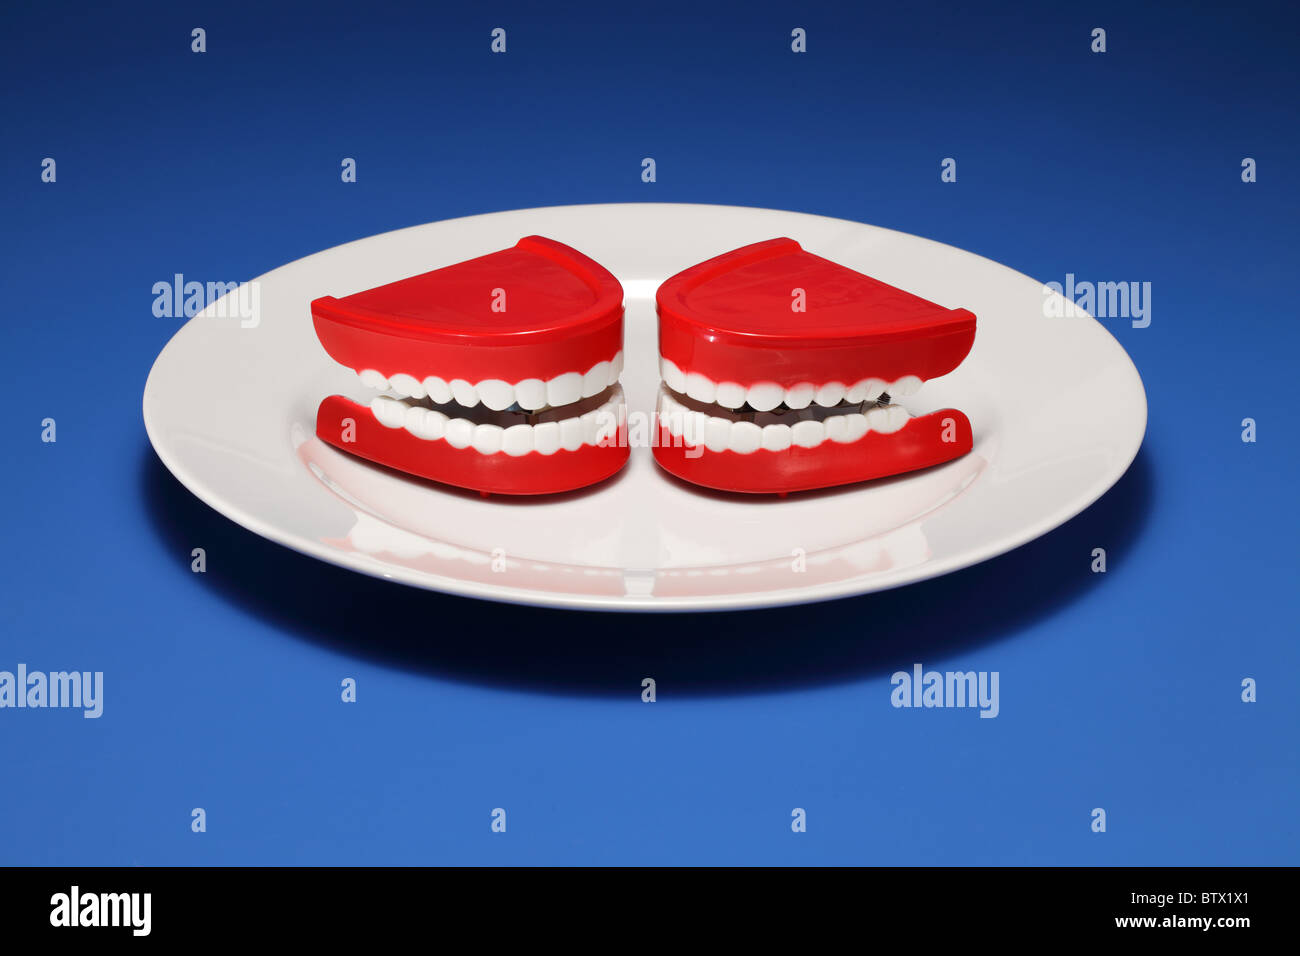 Deux gencives et les dents en plastique sur une assiette blanche Banque D'Images